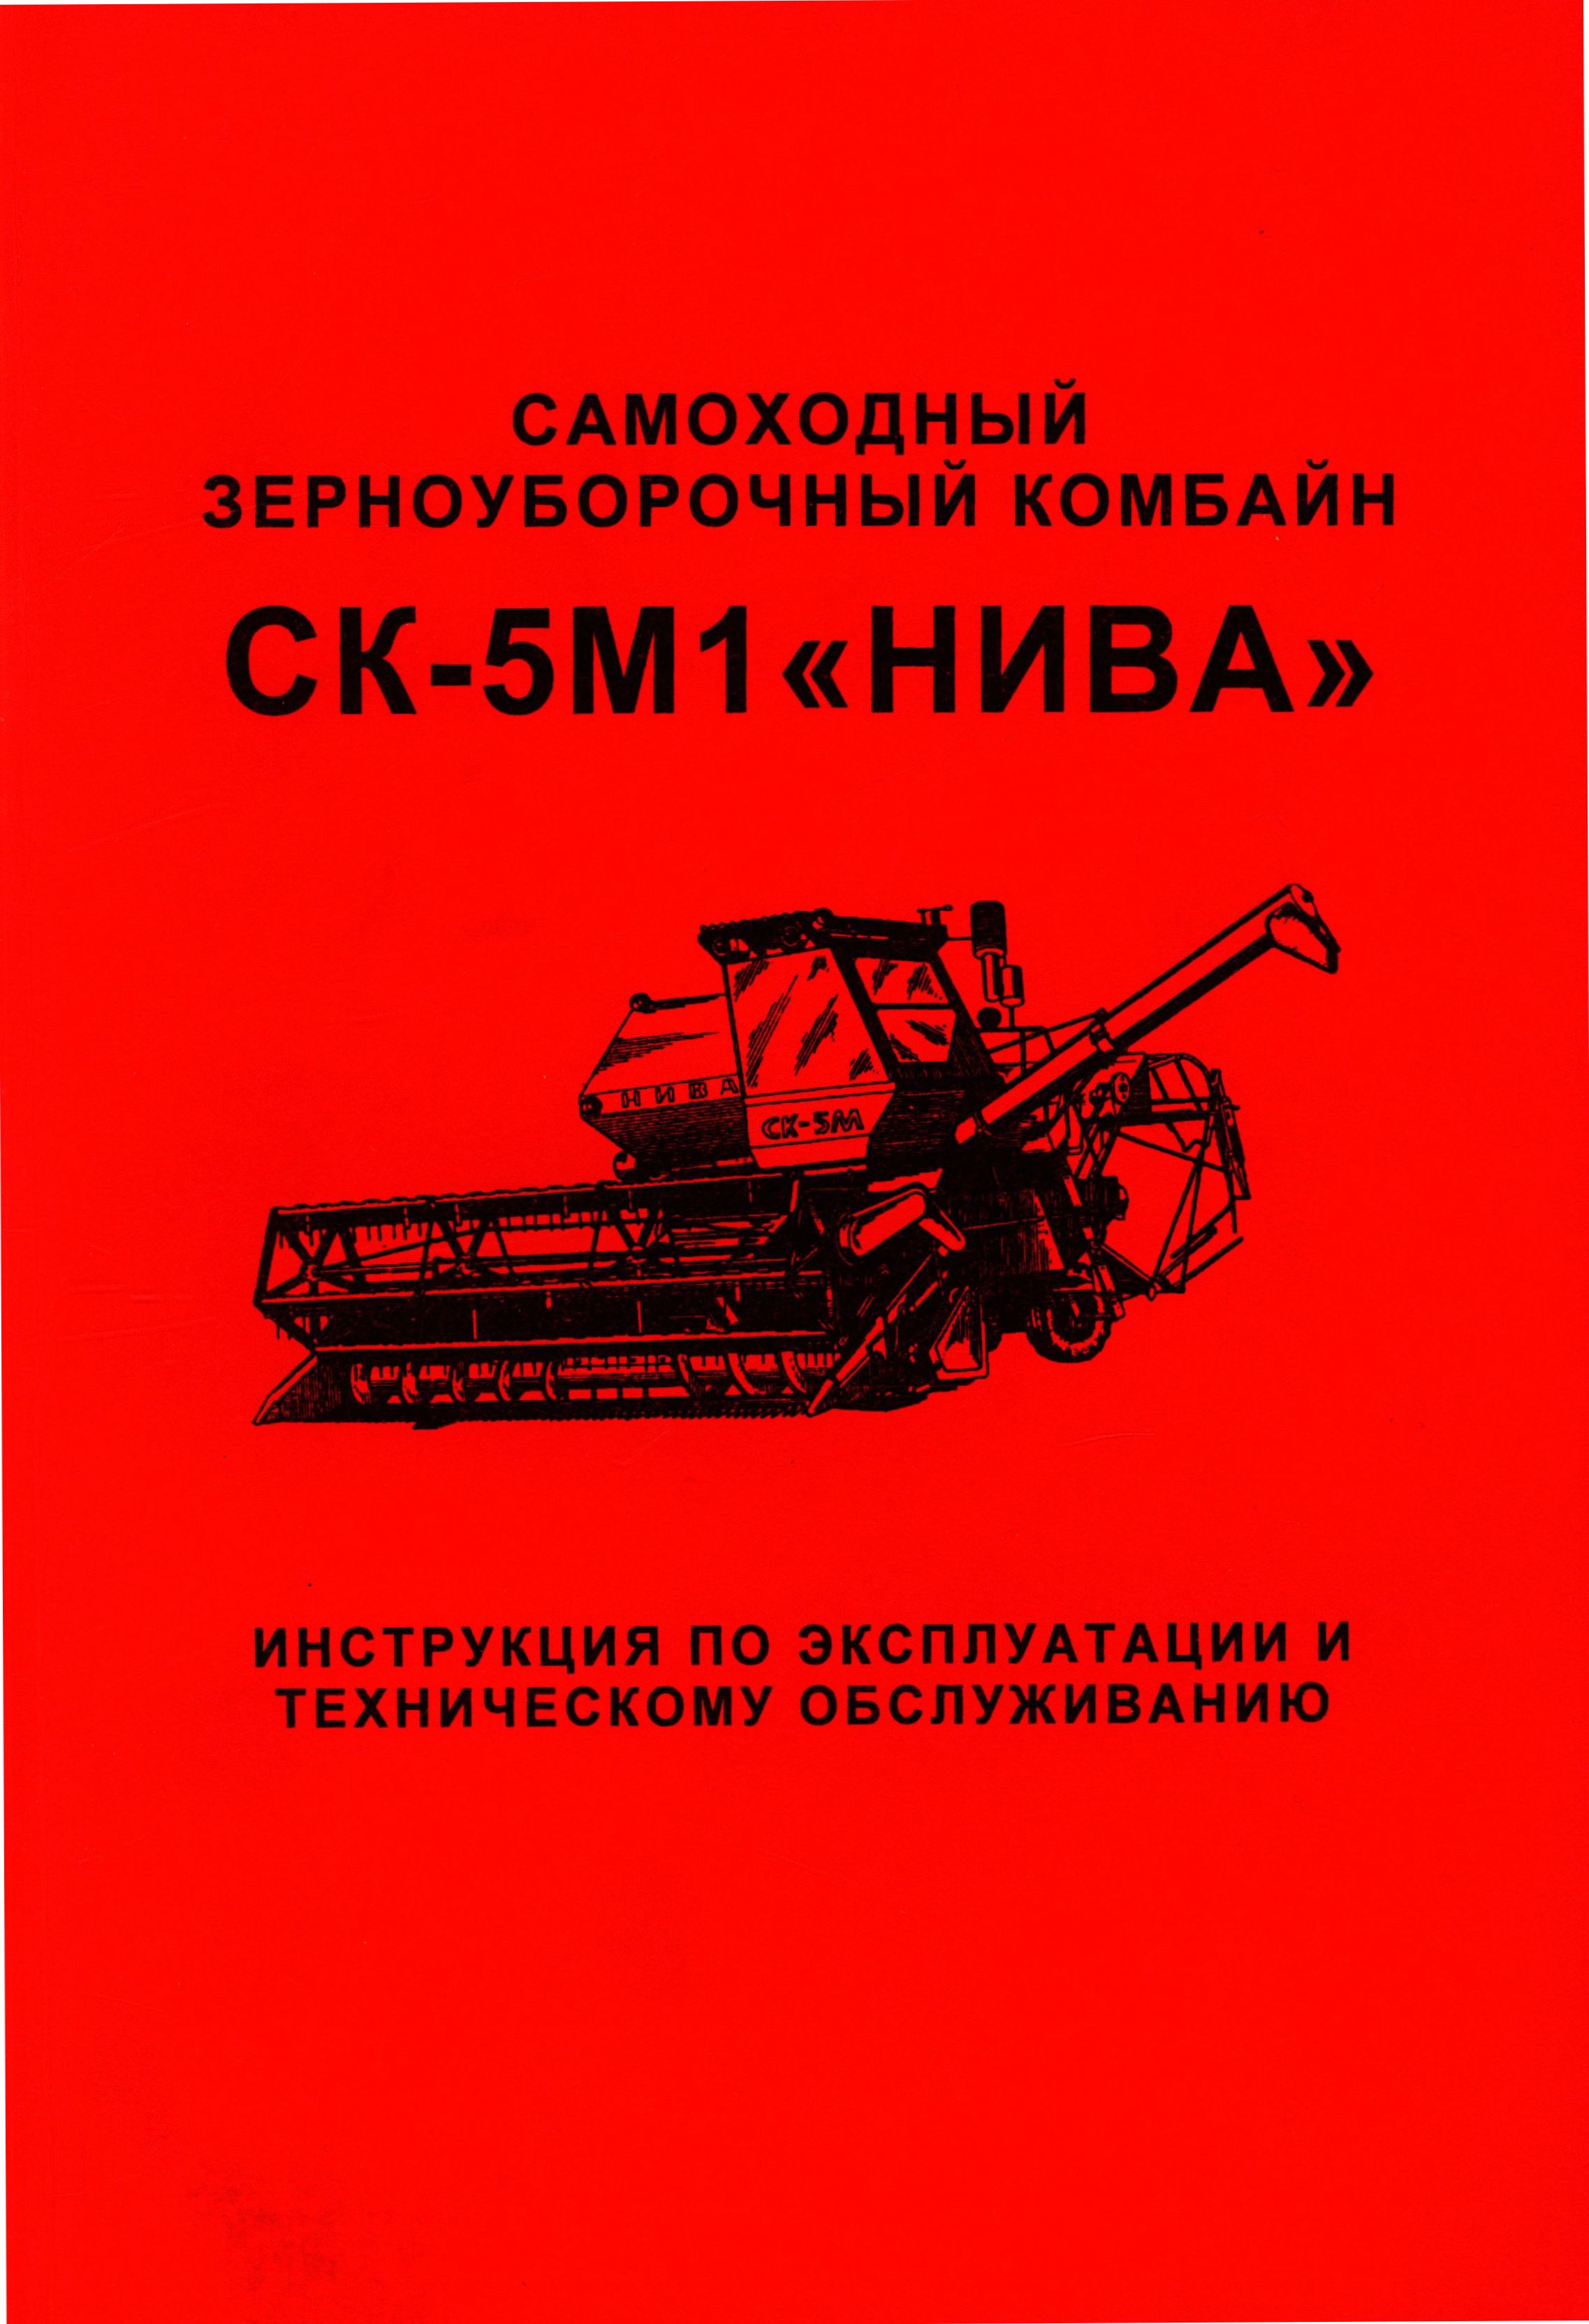 Самоходный зерноуборочный комбайн СК-5М1 «Нива» Инструкция по эксплуатации и ТО